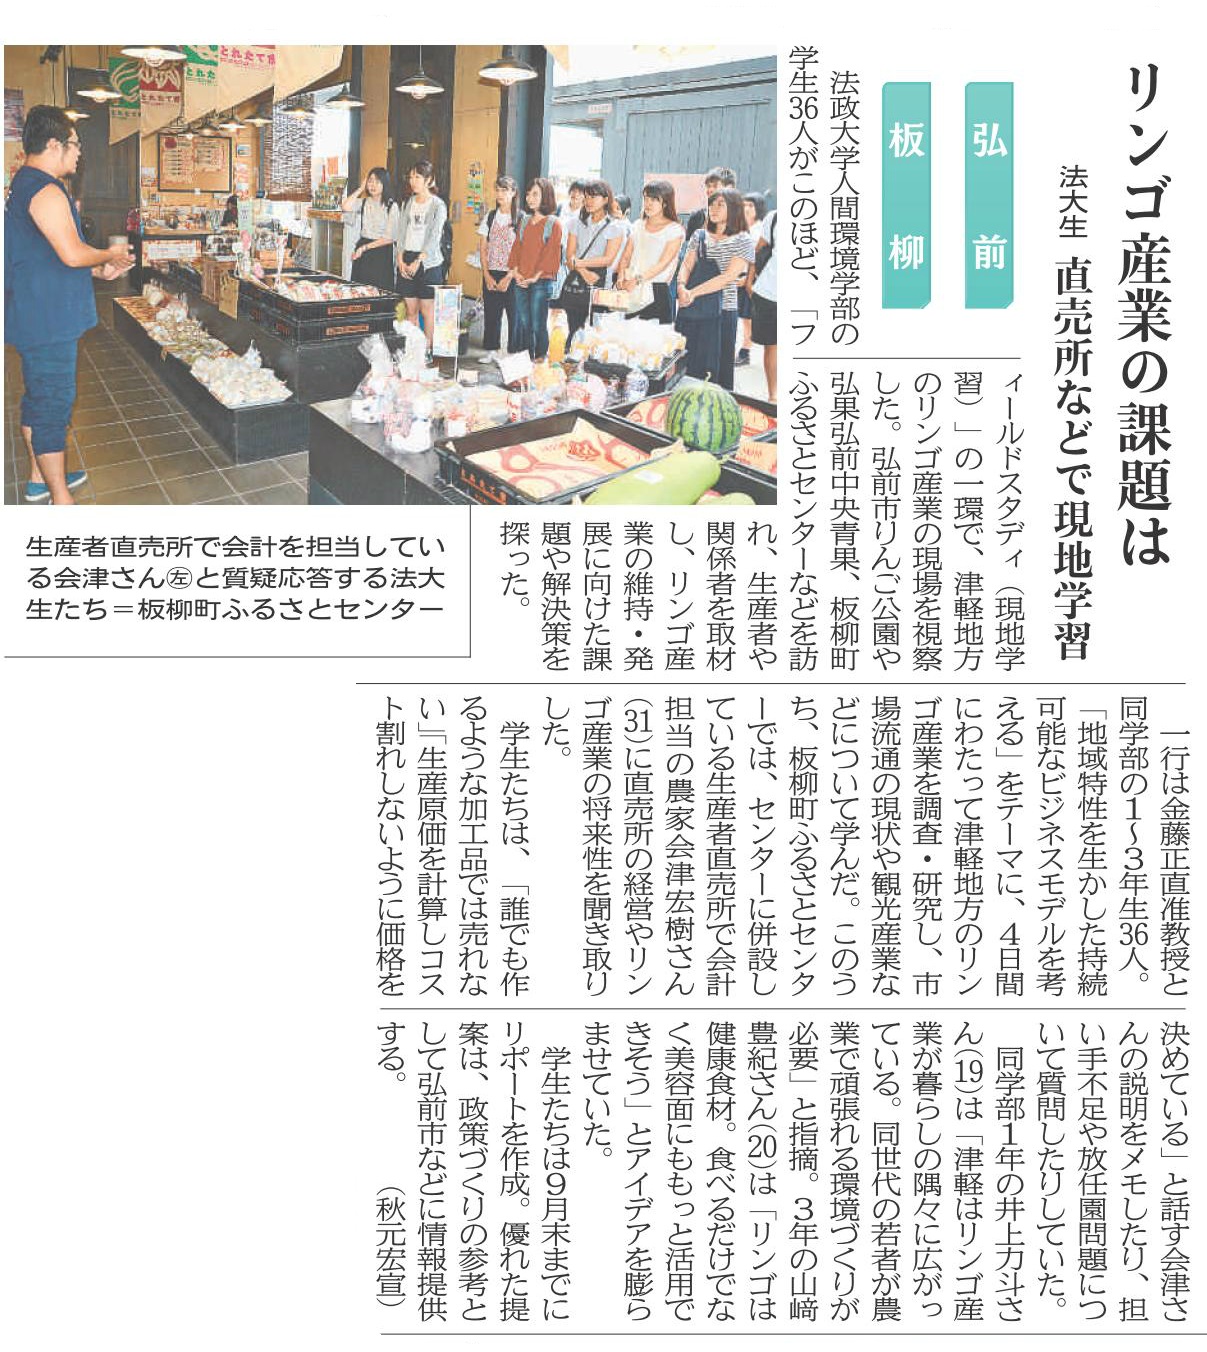 「 東奥日報」に青森県で実施したフィールドスタディの記事が掲載